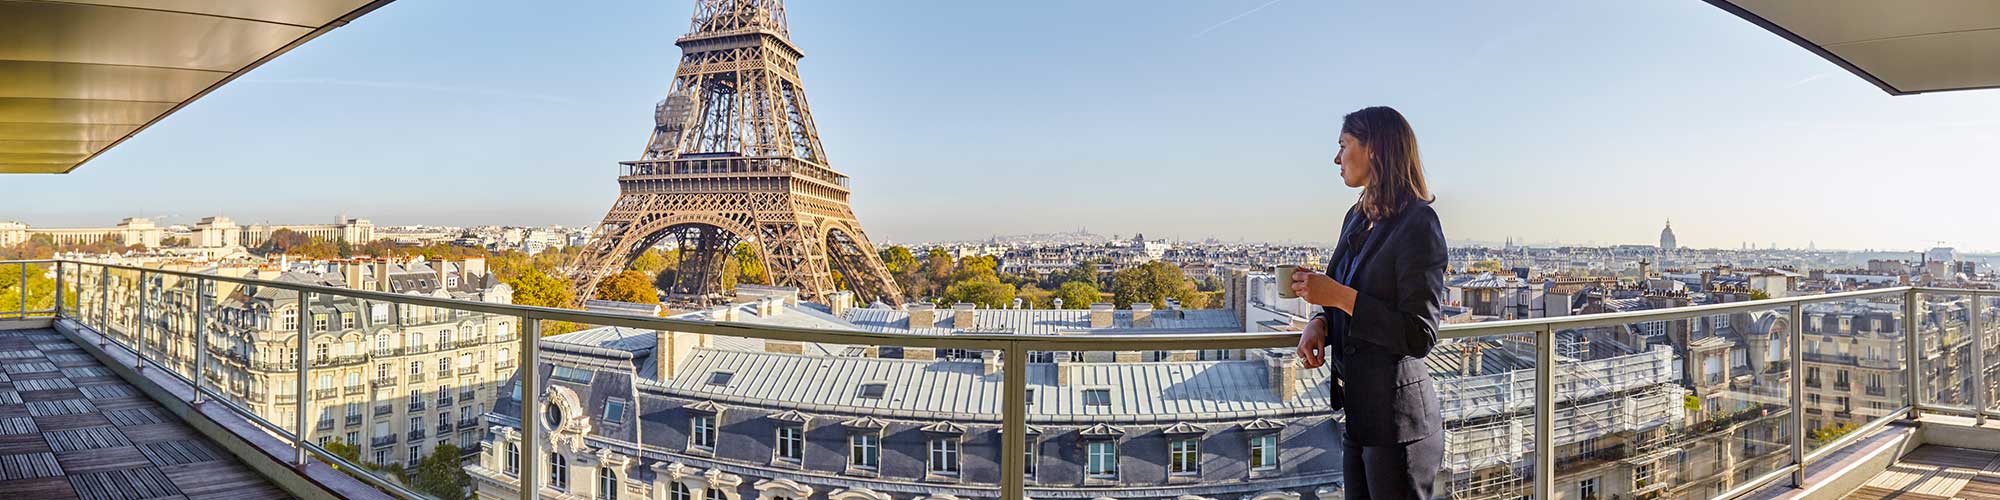 Htel vue Tour Eiffel